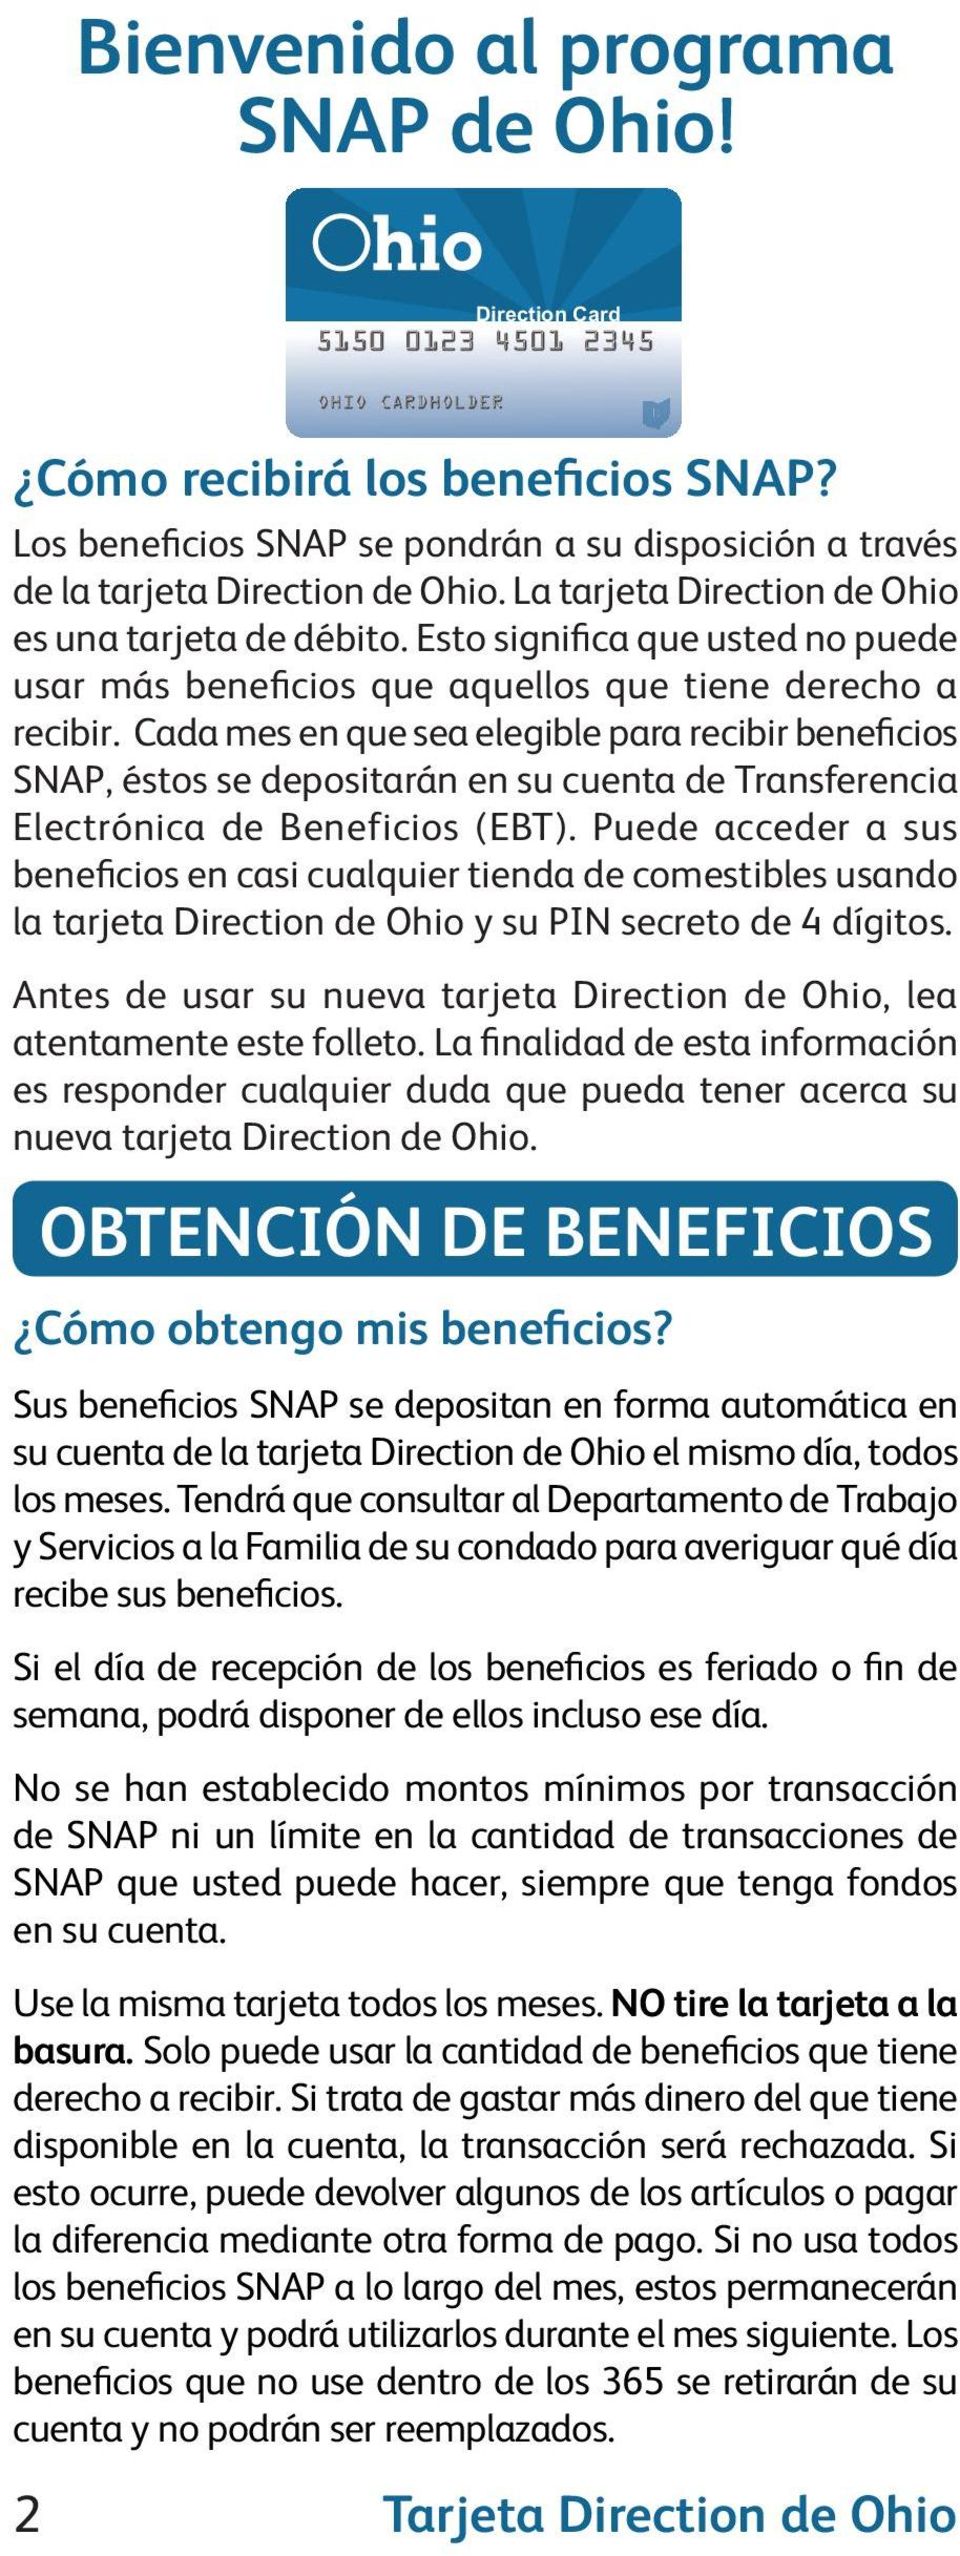 Cada mes en que sea elegible para recibir beneficios SNAP, éstos se depositarán en su cuenta de Transferencia Electrónica de Beneficios (EBT).